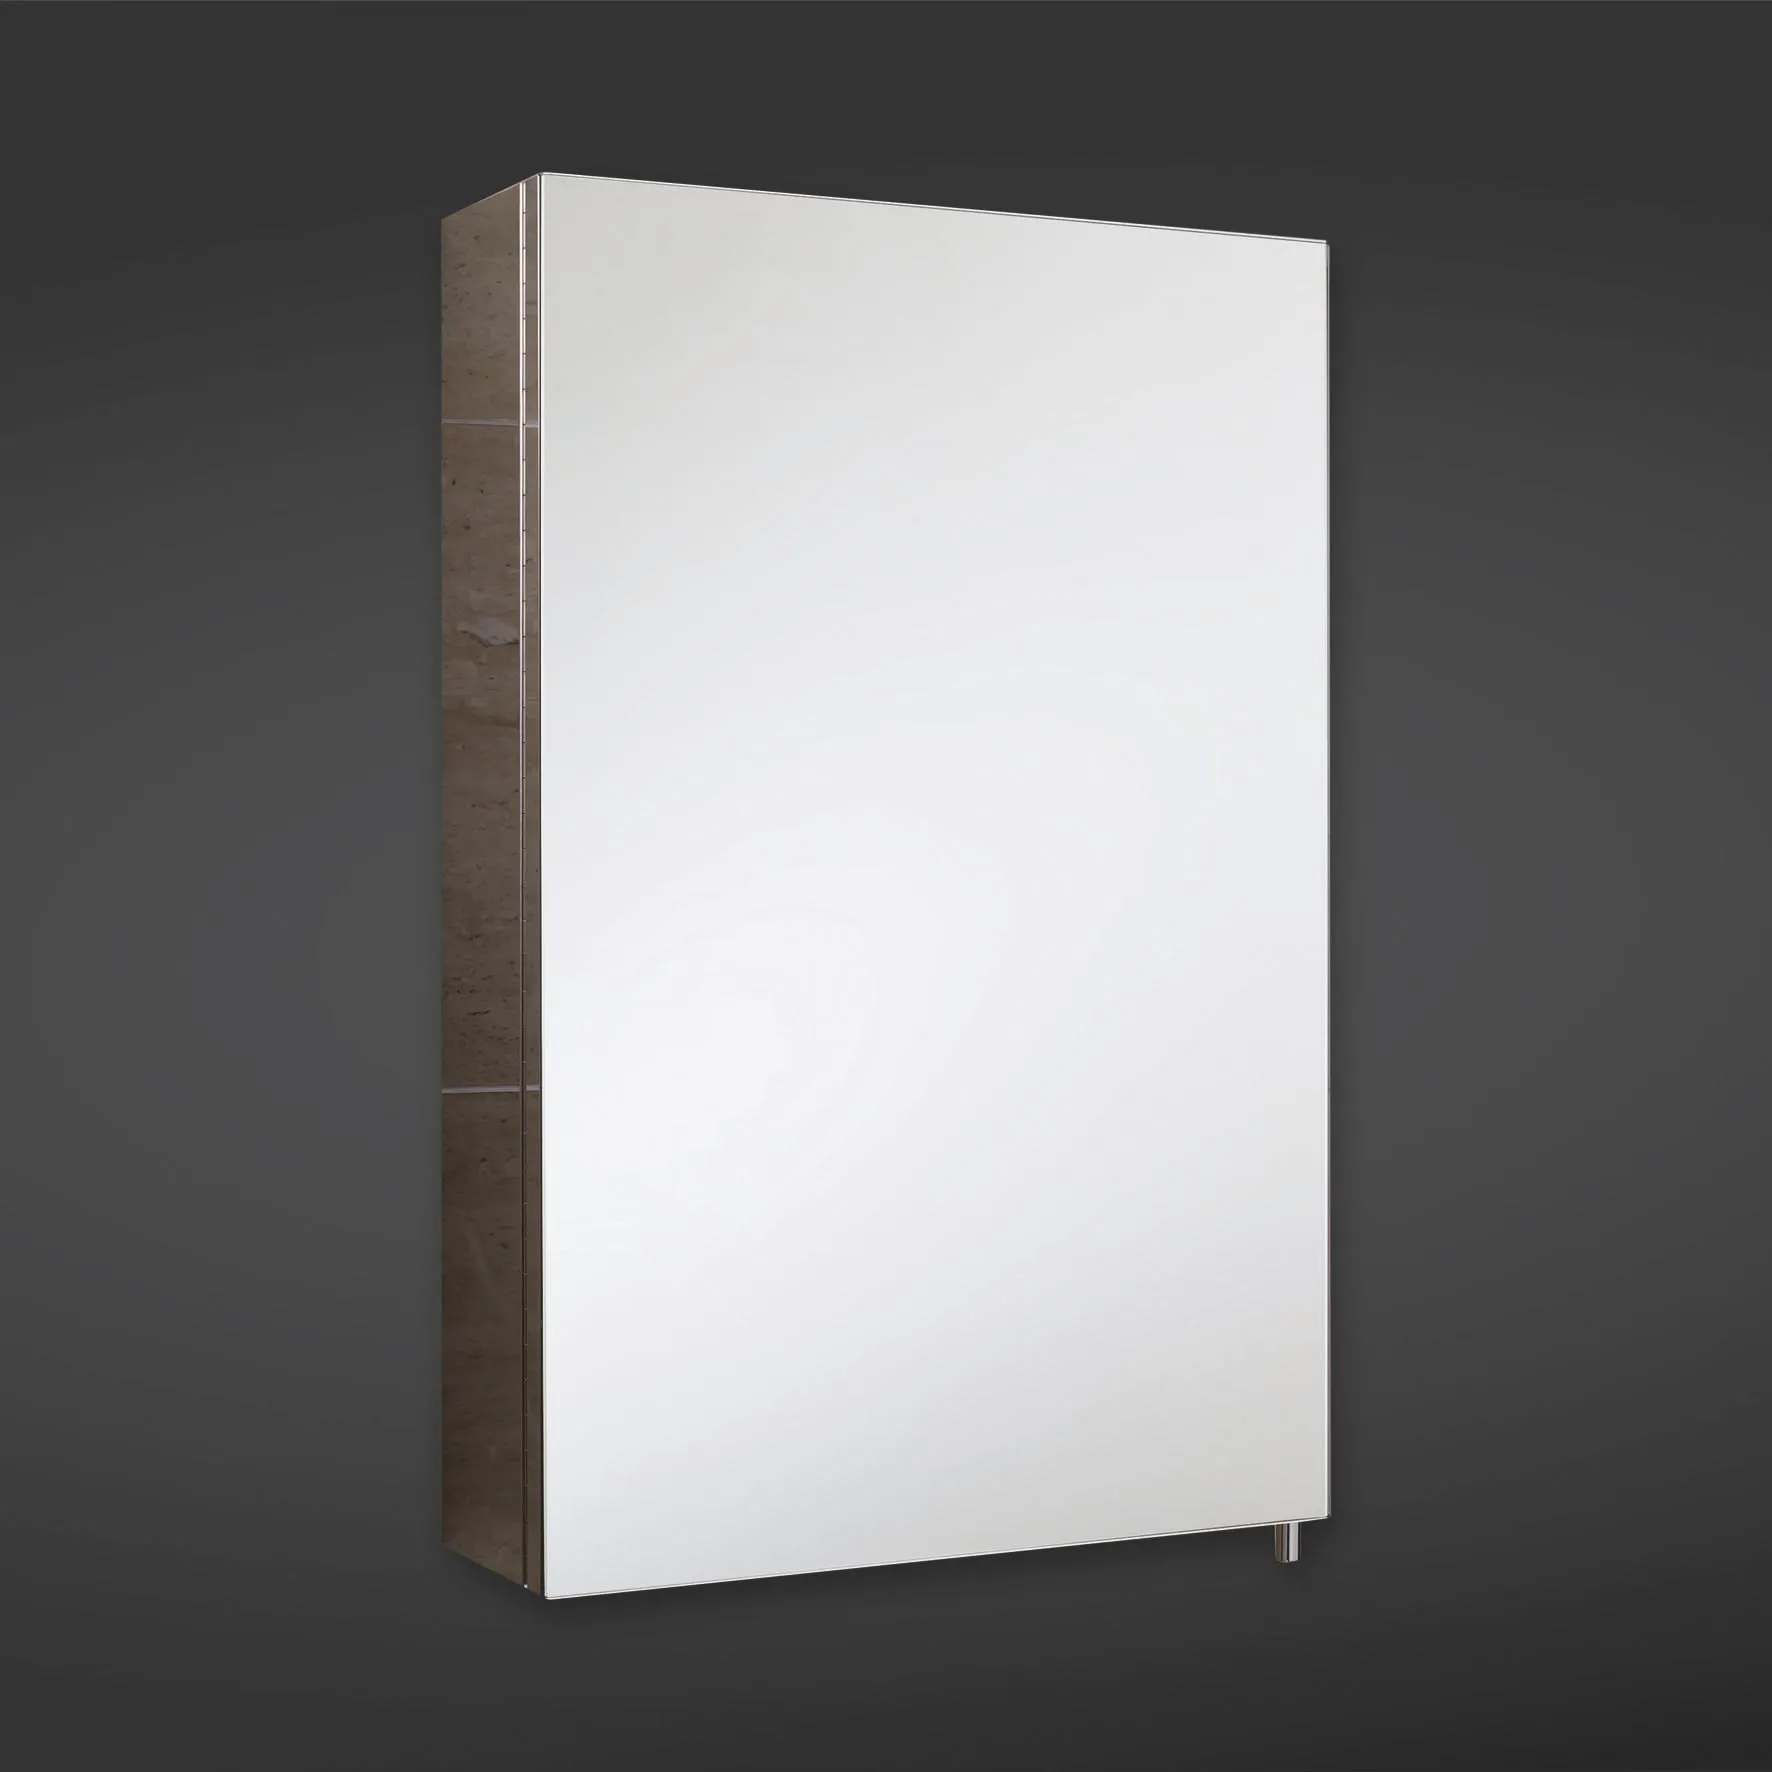 RAK Cube Single Door Stainless Steel Mirror Cabinet 600 x 400mm